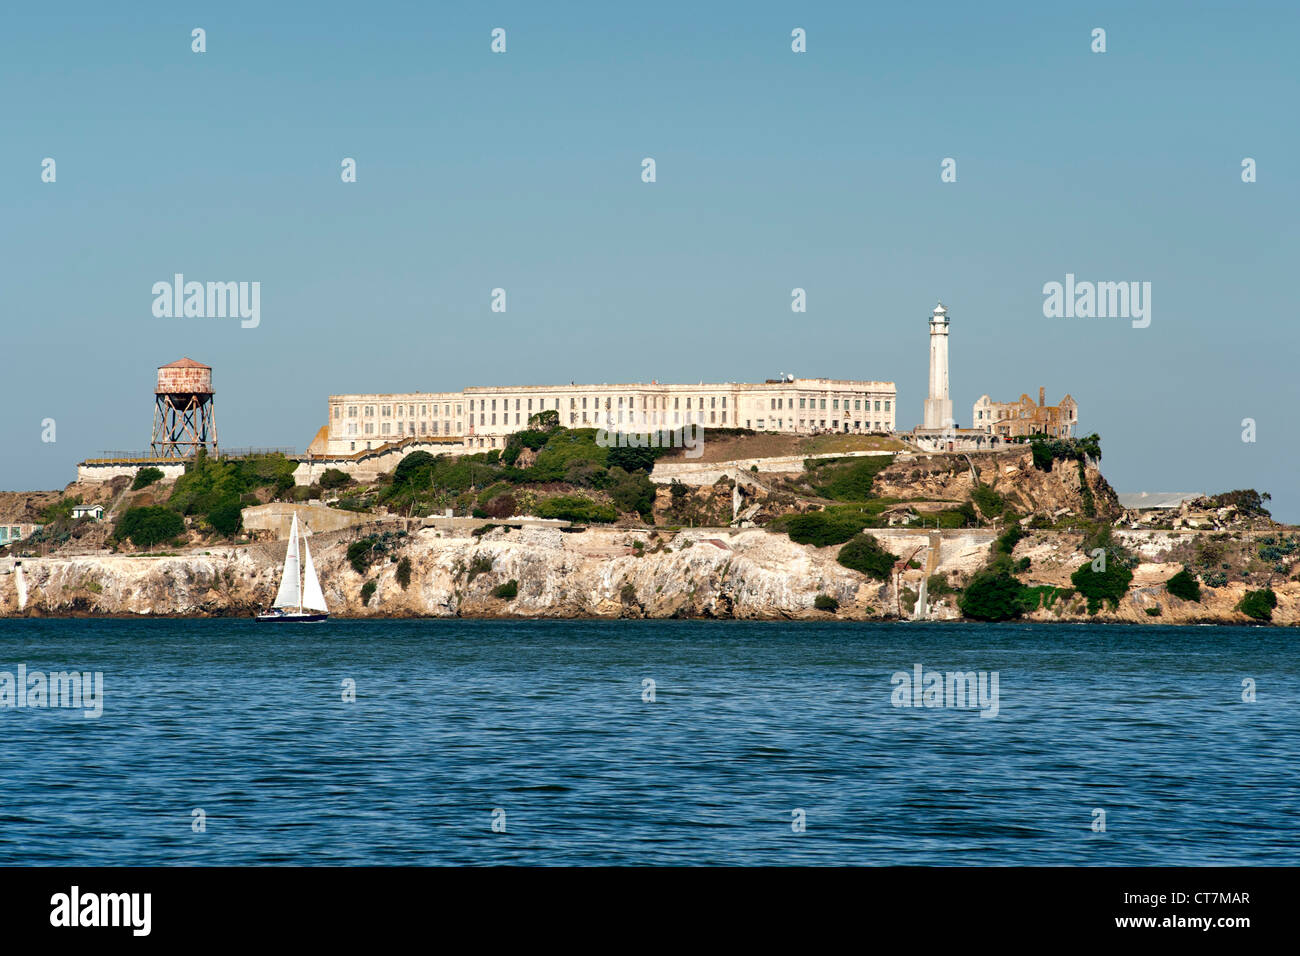 Gefängnis Alcatraz und die Insel Alcatraz in der Bucht von San Francisco in Kalifornien, USA. Stockfoto